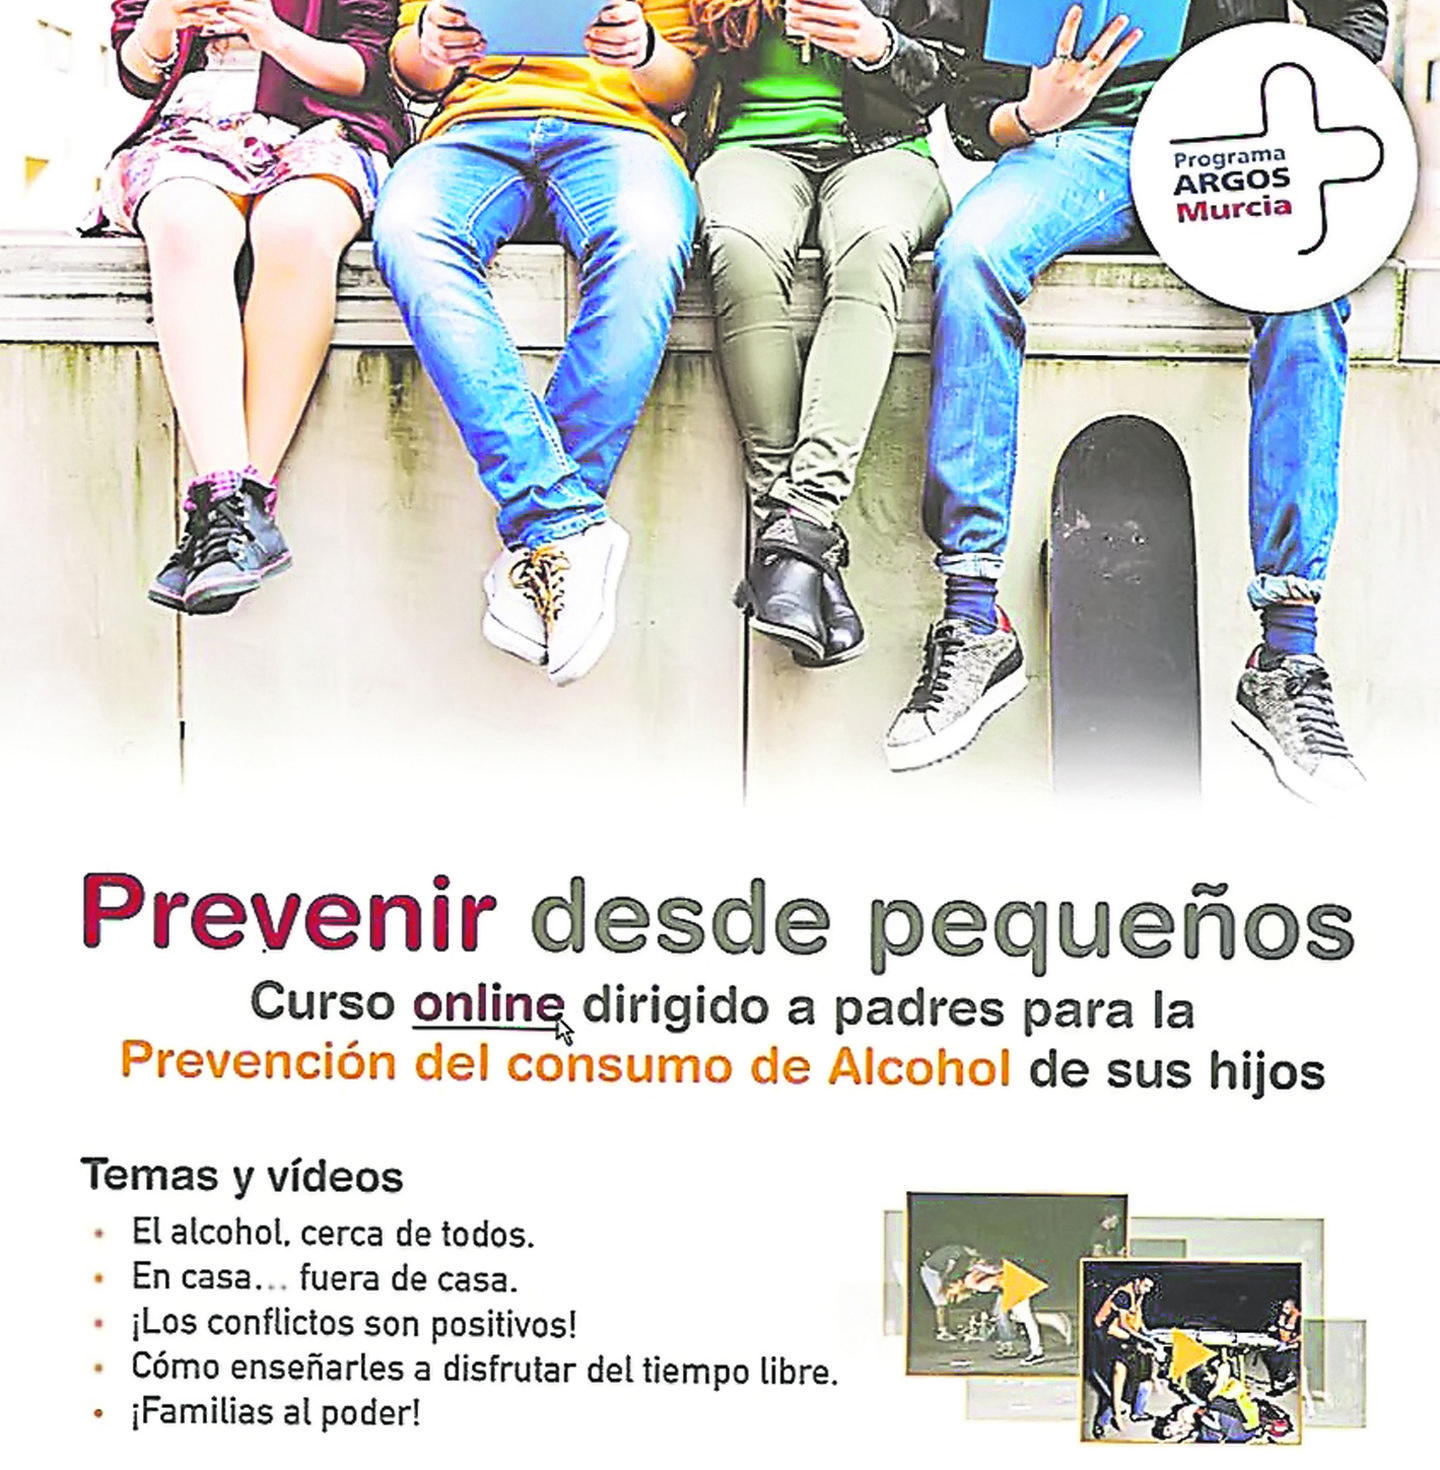 Sanidad y Salubridad coordinan un curso online para prevenir desde pequeños el consumo de alcohol de los hijos